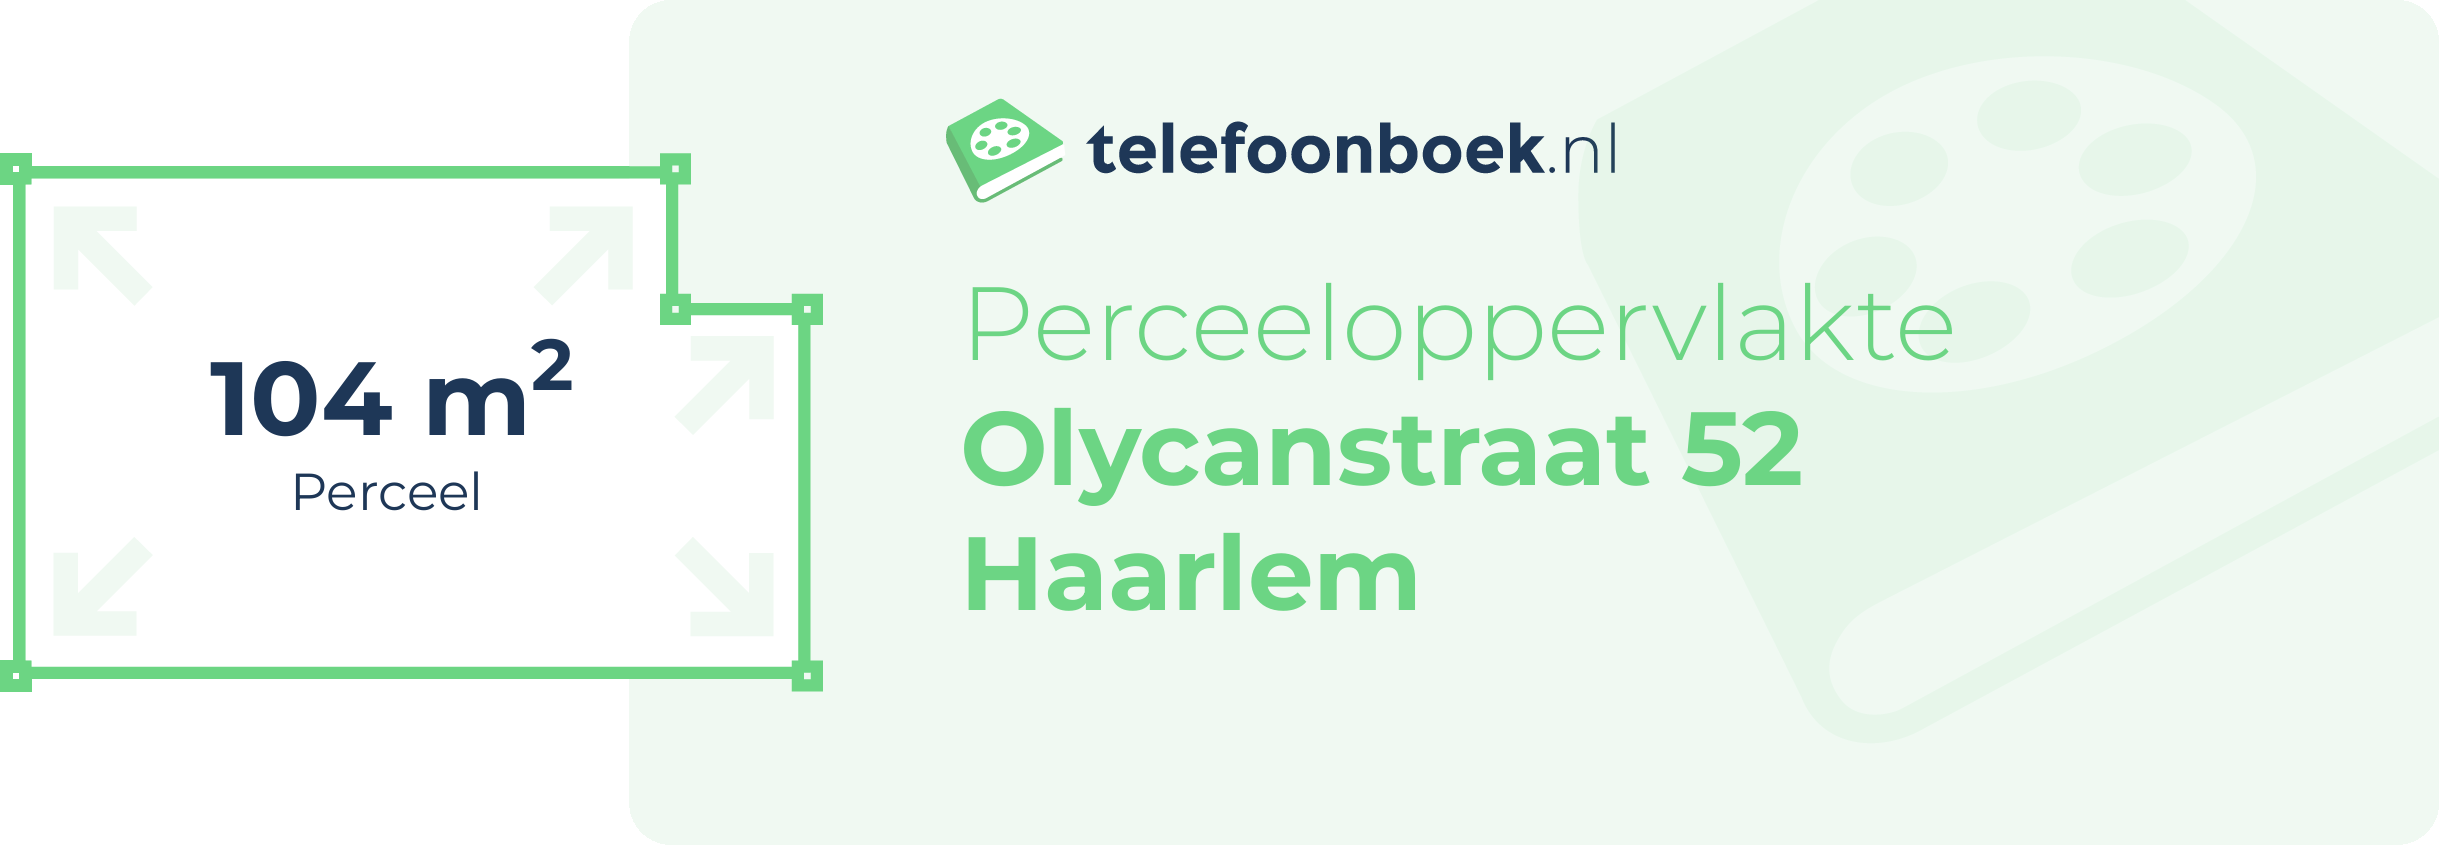 Perceeloppervlakte Olycanstraat 52 Haarlem